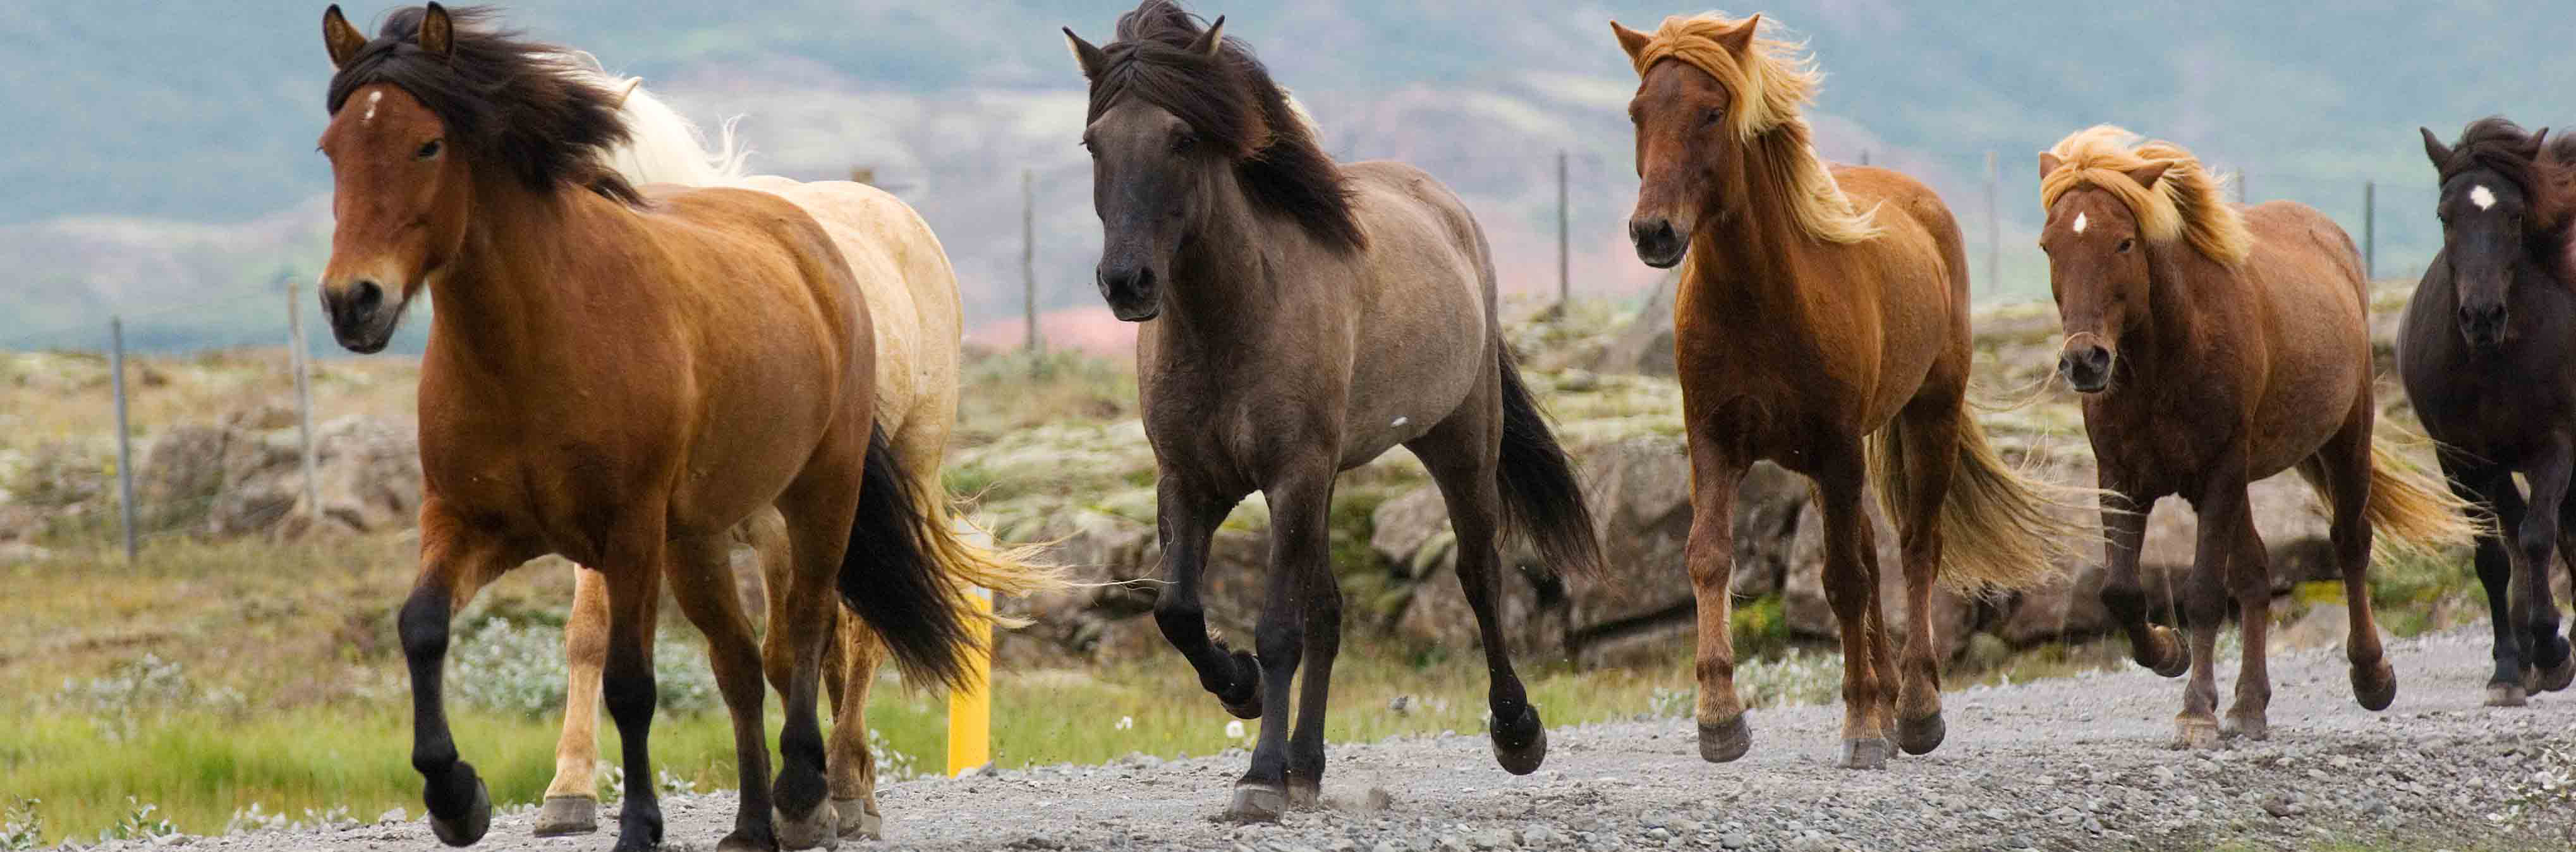 Le cheval islandais et ses allures